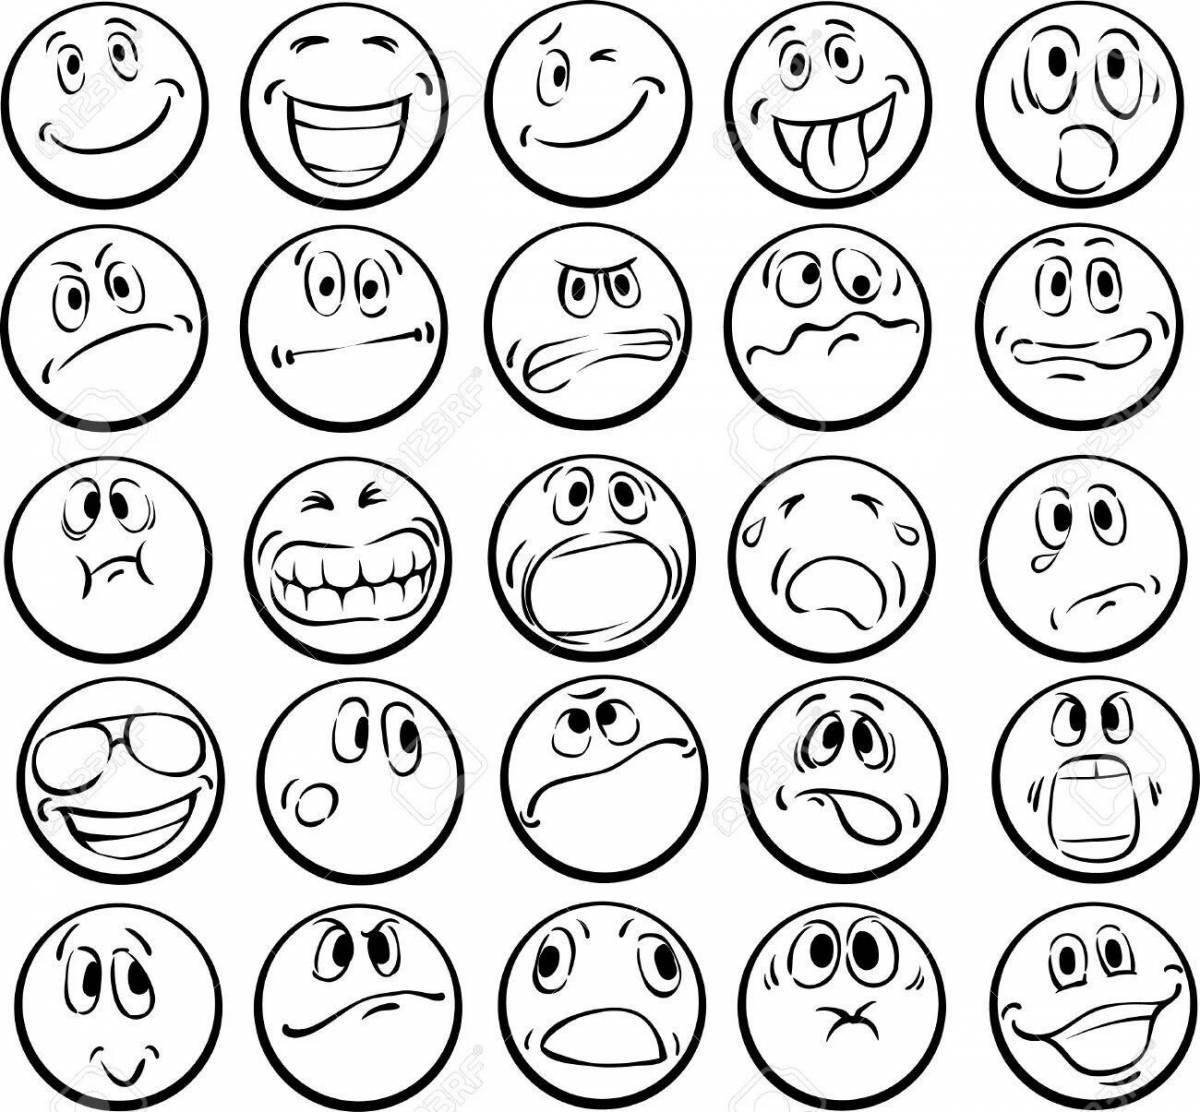 Fun coloring emoticons emotions